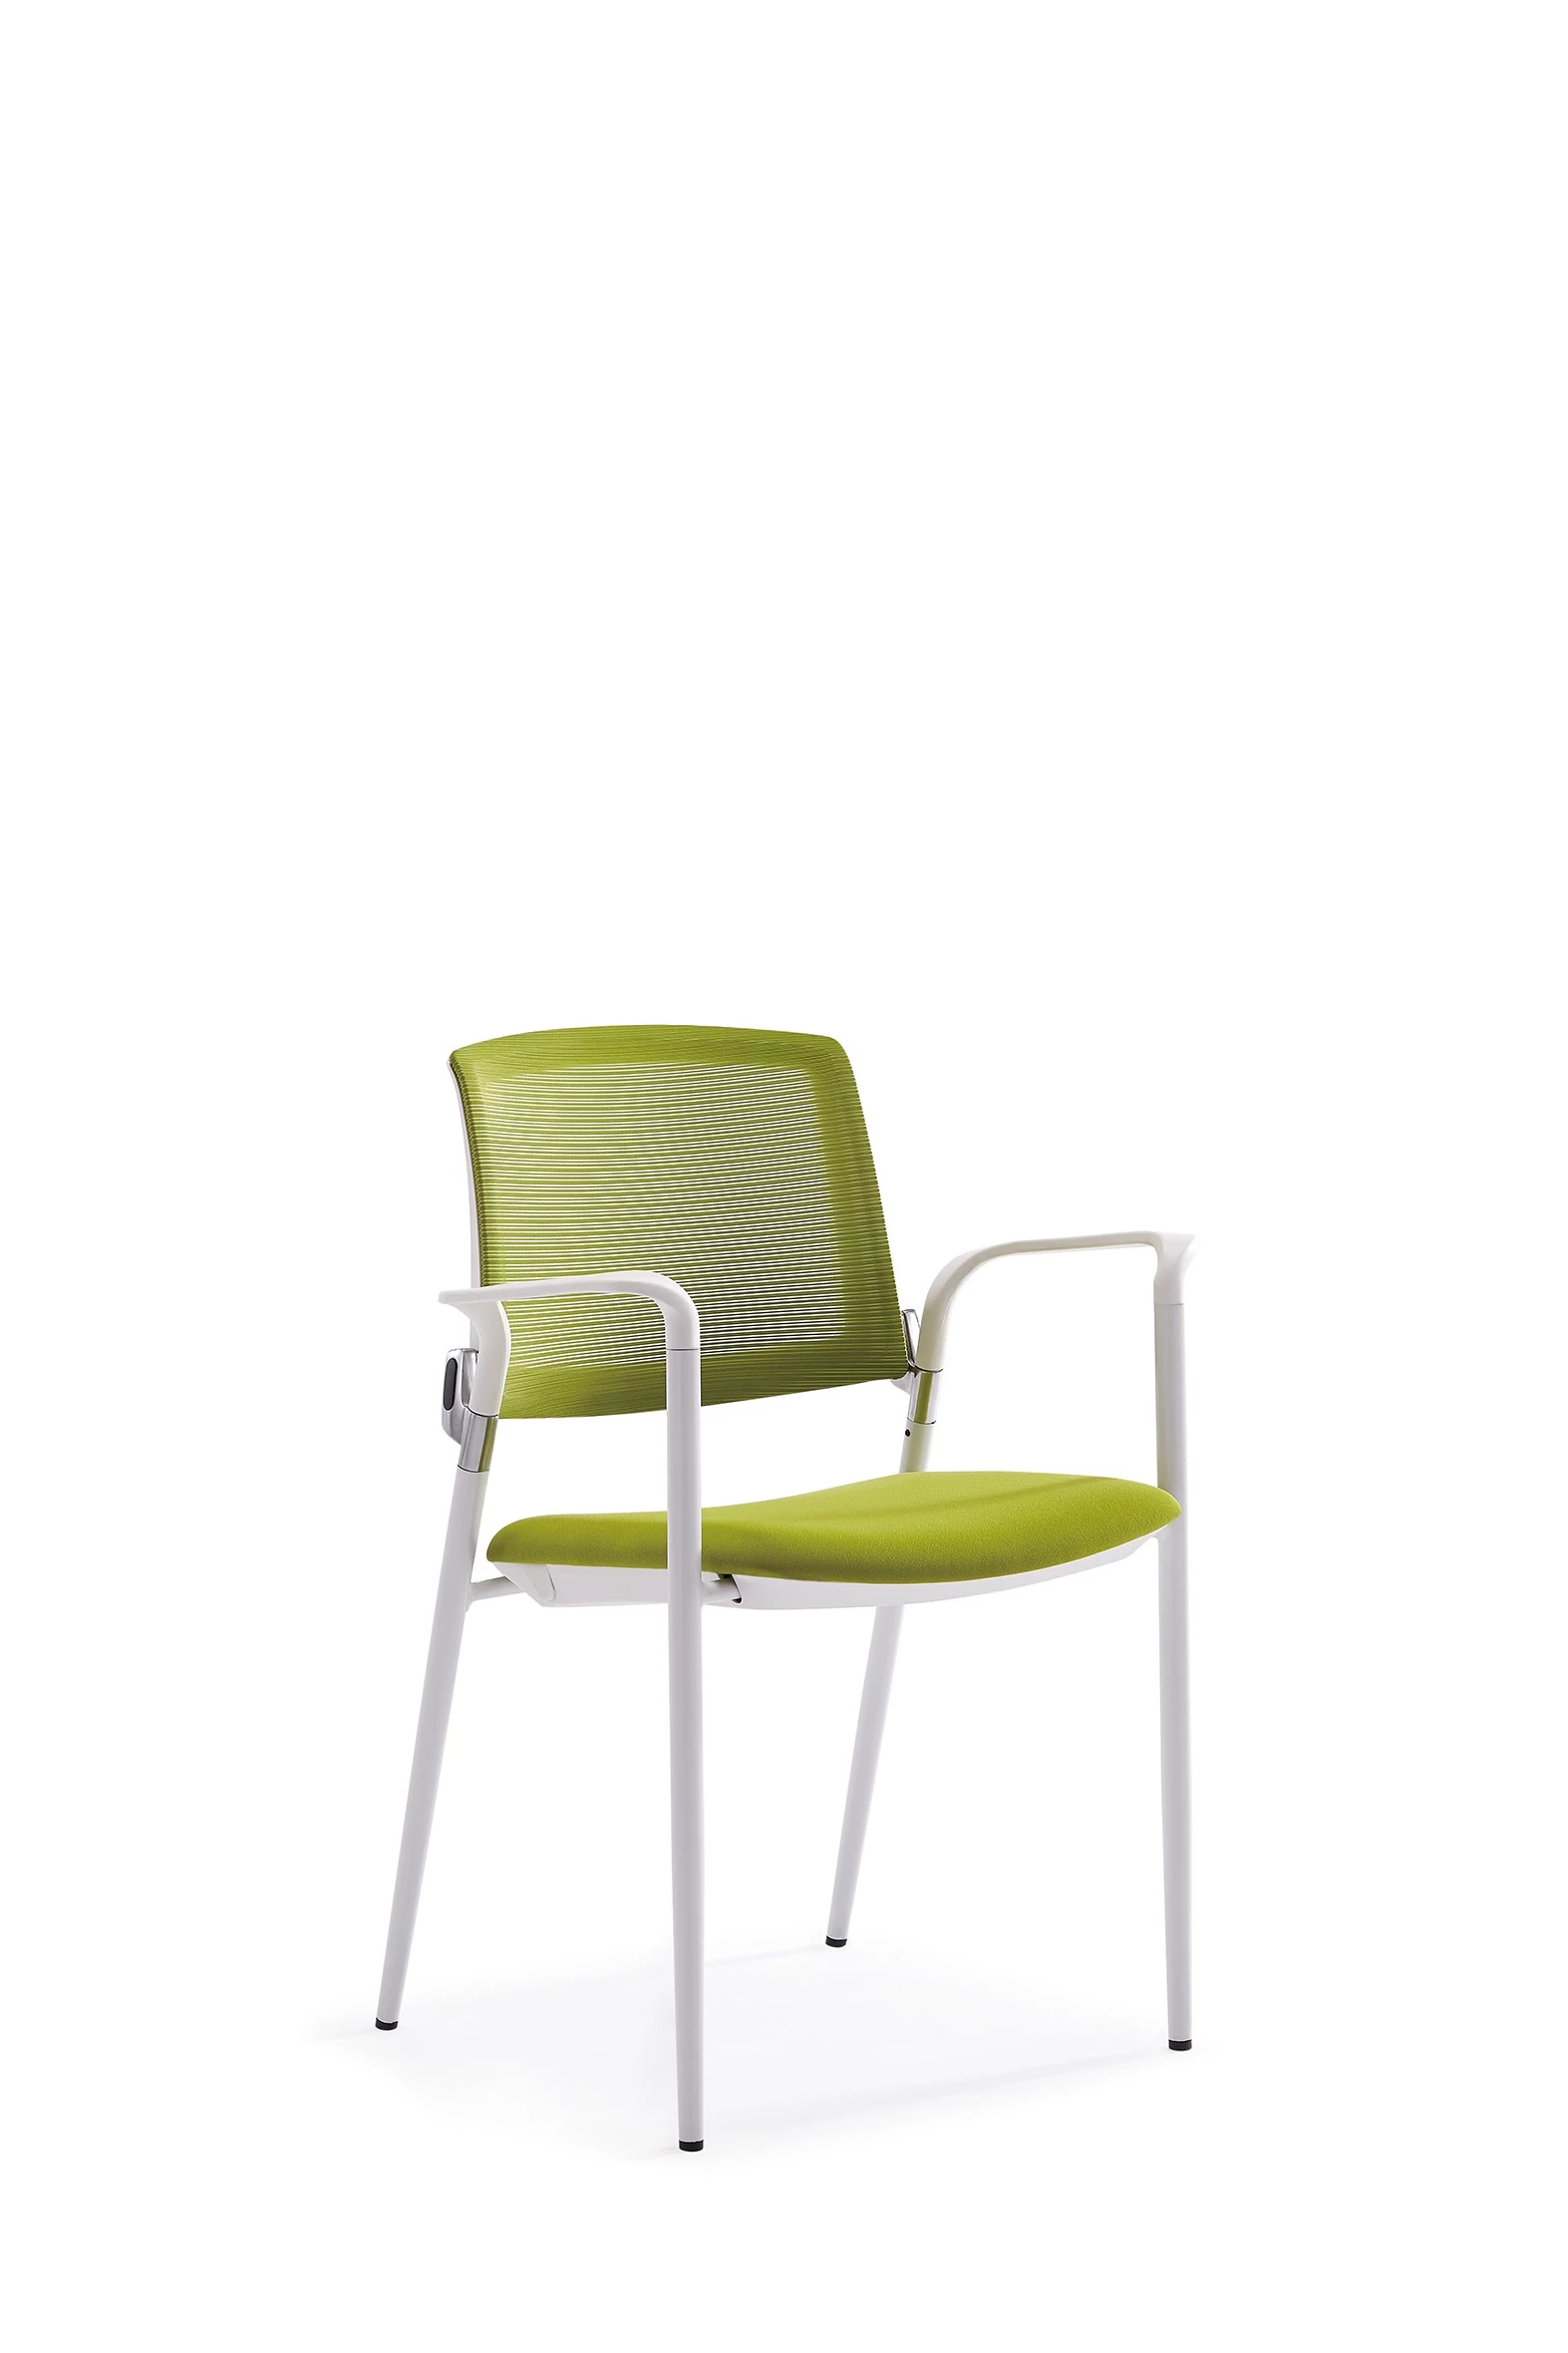 Newcity 1534现代堆叠网格会议训练椅园林家具训练椅现代时尚训练椅优质批发户外椅供应商中国佛山